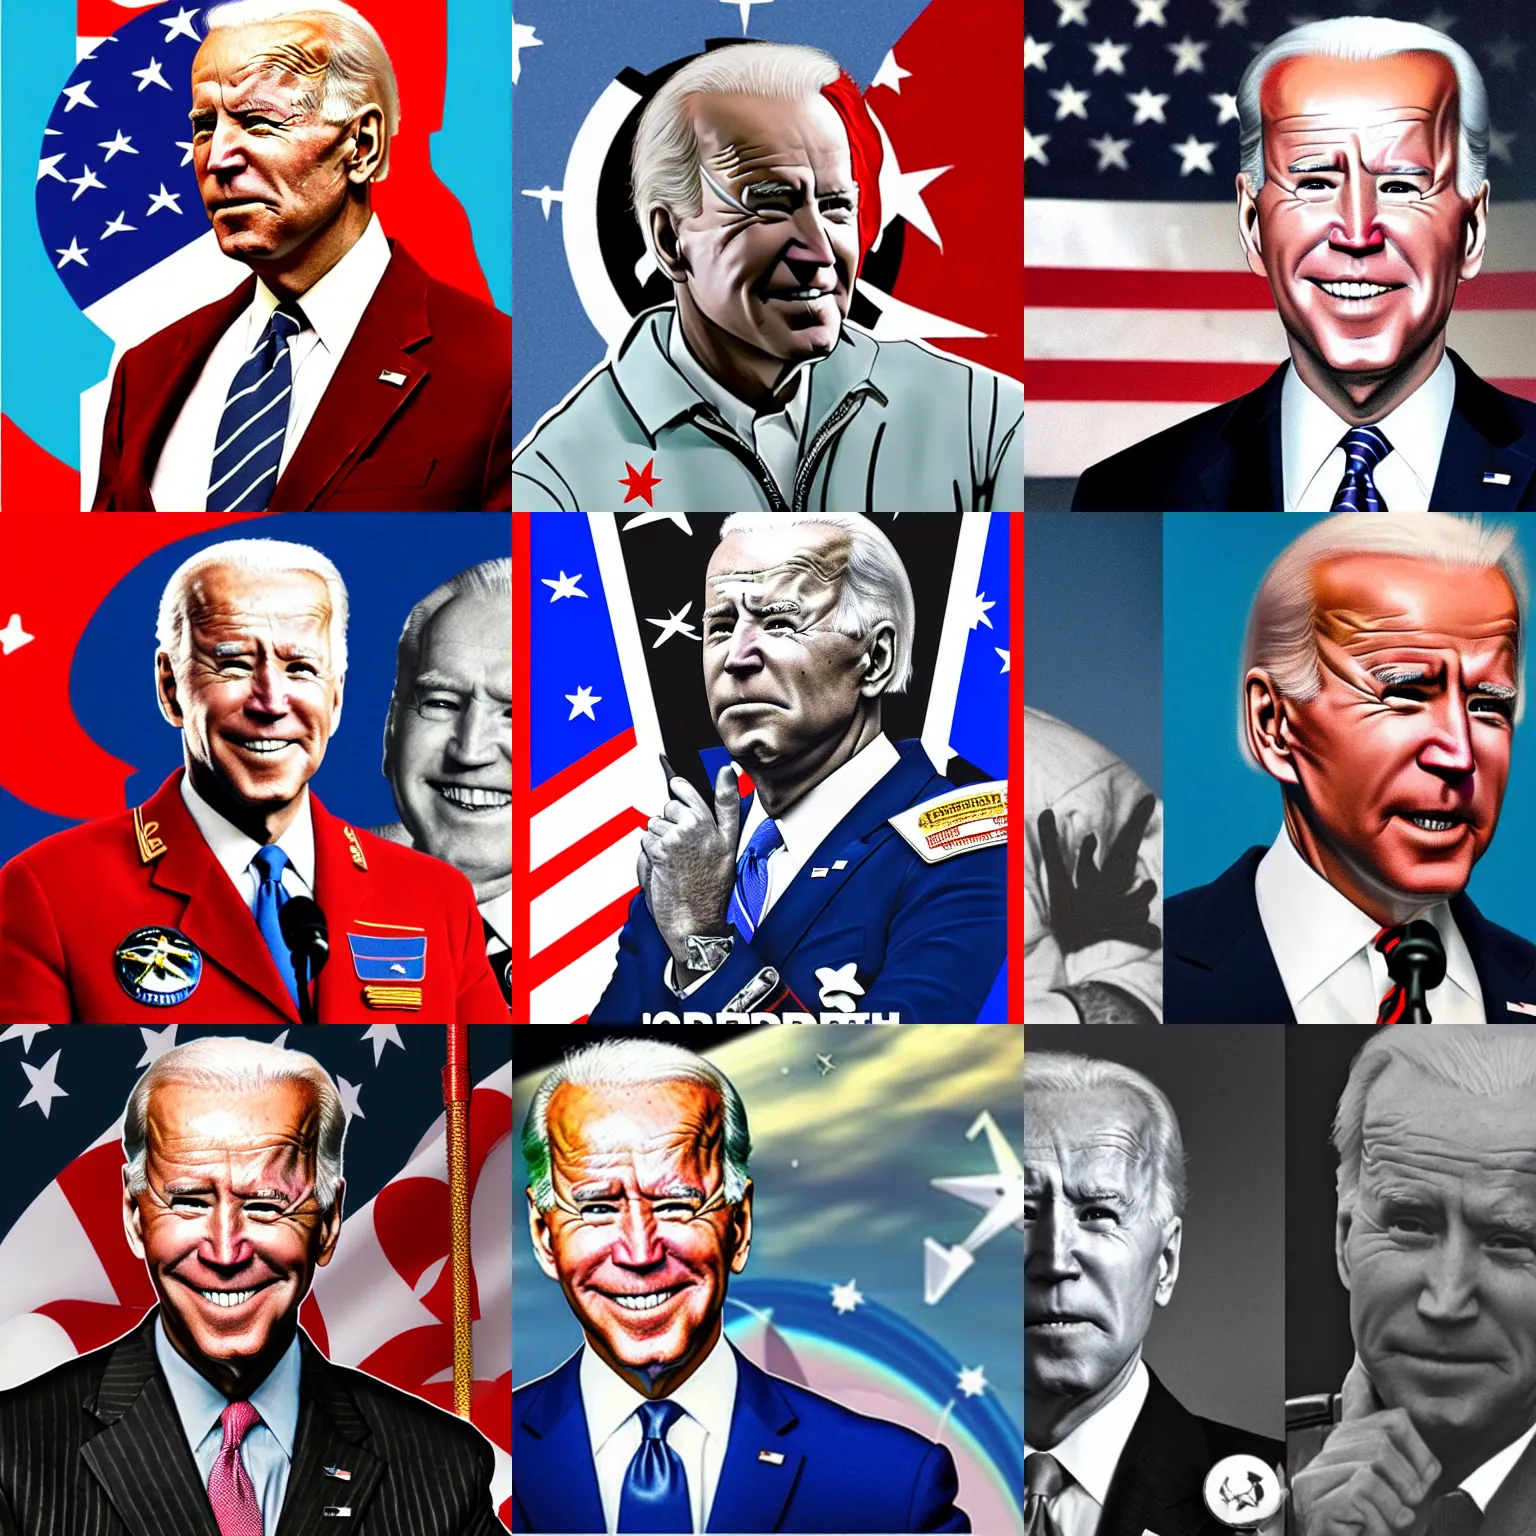 Prompt: Joe Biden as an soviet cosmonaut, soviet propaganda